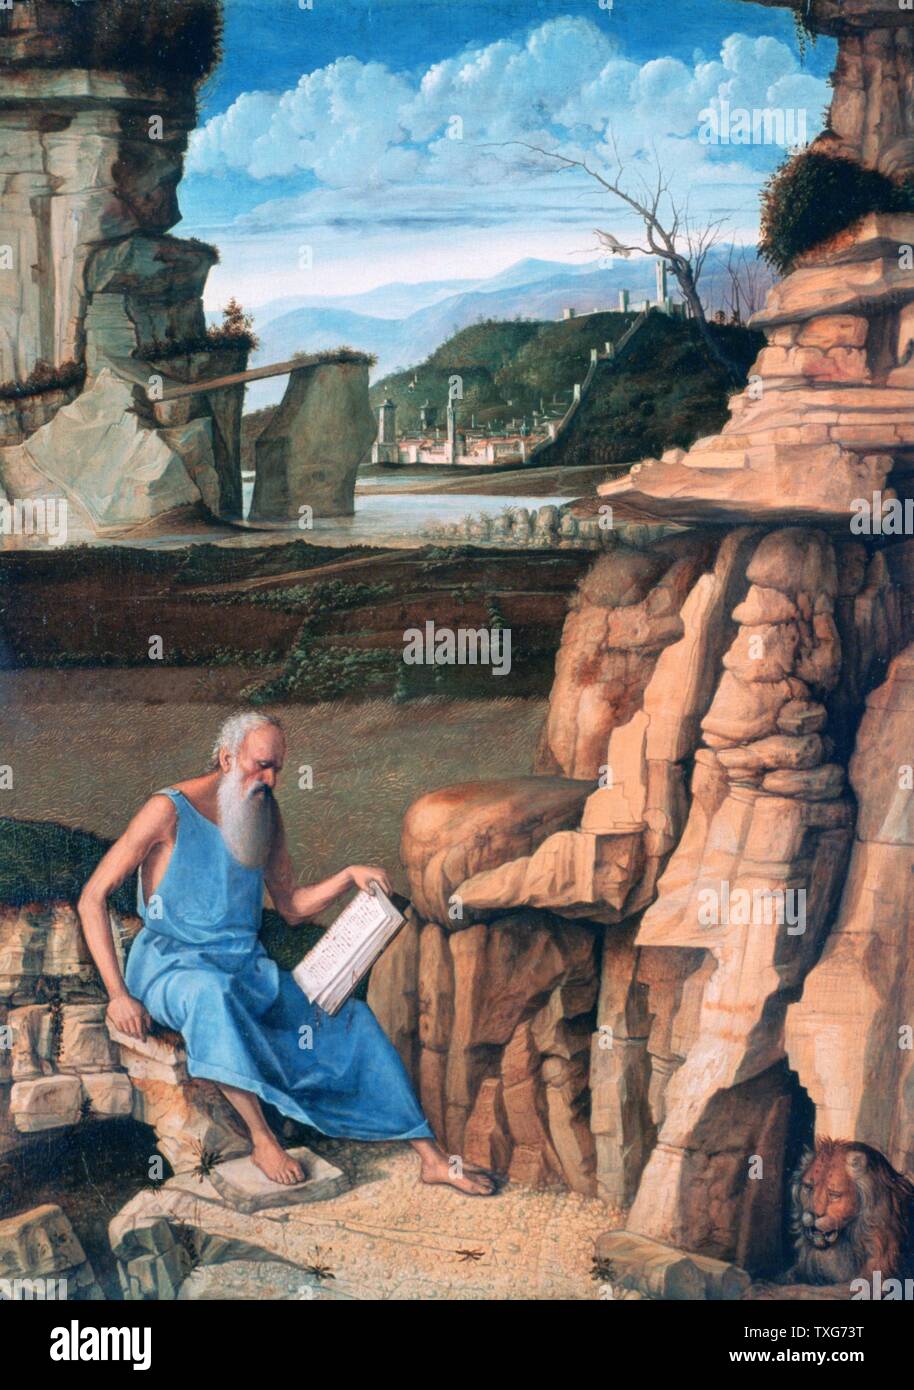 Giovanni Bellini italienische Schule des Hl. Hieronymus lesen in einer Landschaft - Hieronymus (340-420) ein Vater der westlichen christlichen Kirche und Compiler der Vulgata Tempera und Öl auf Holz Stockfoto